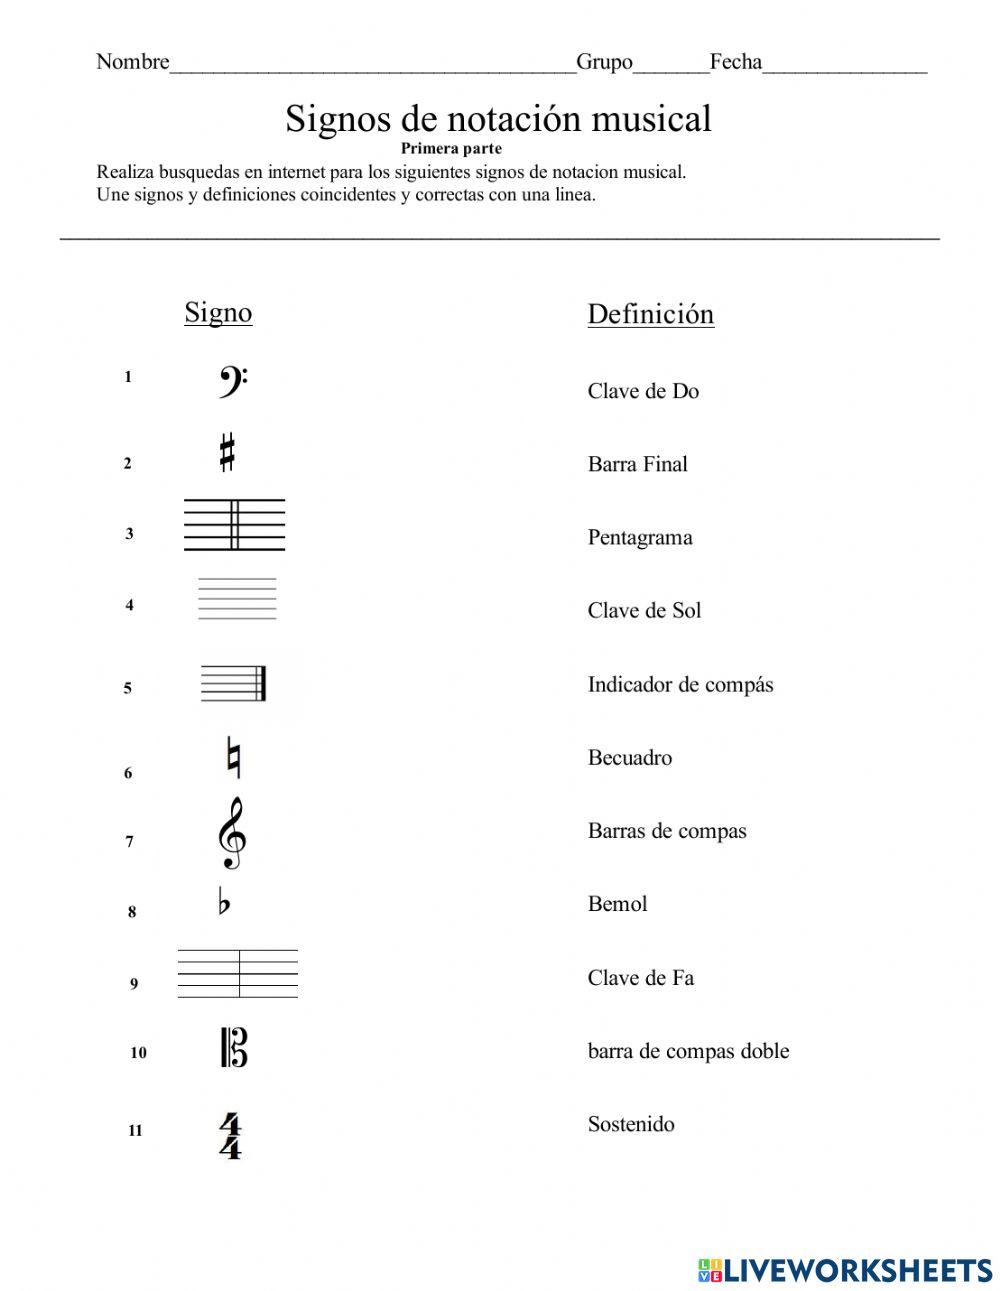 Signos de notación musical